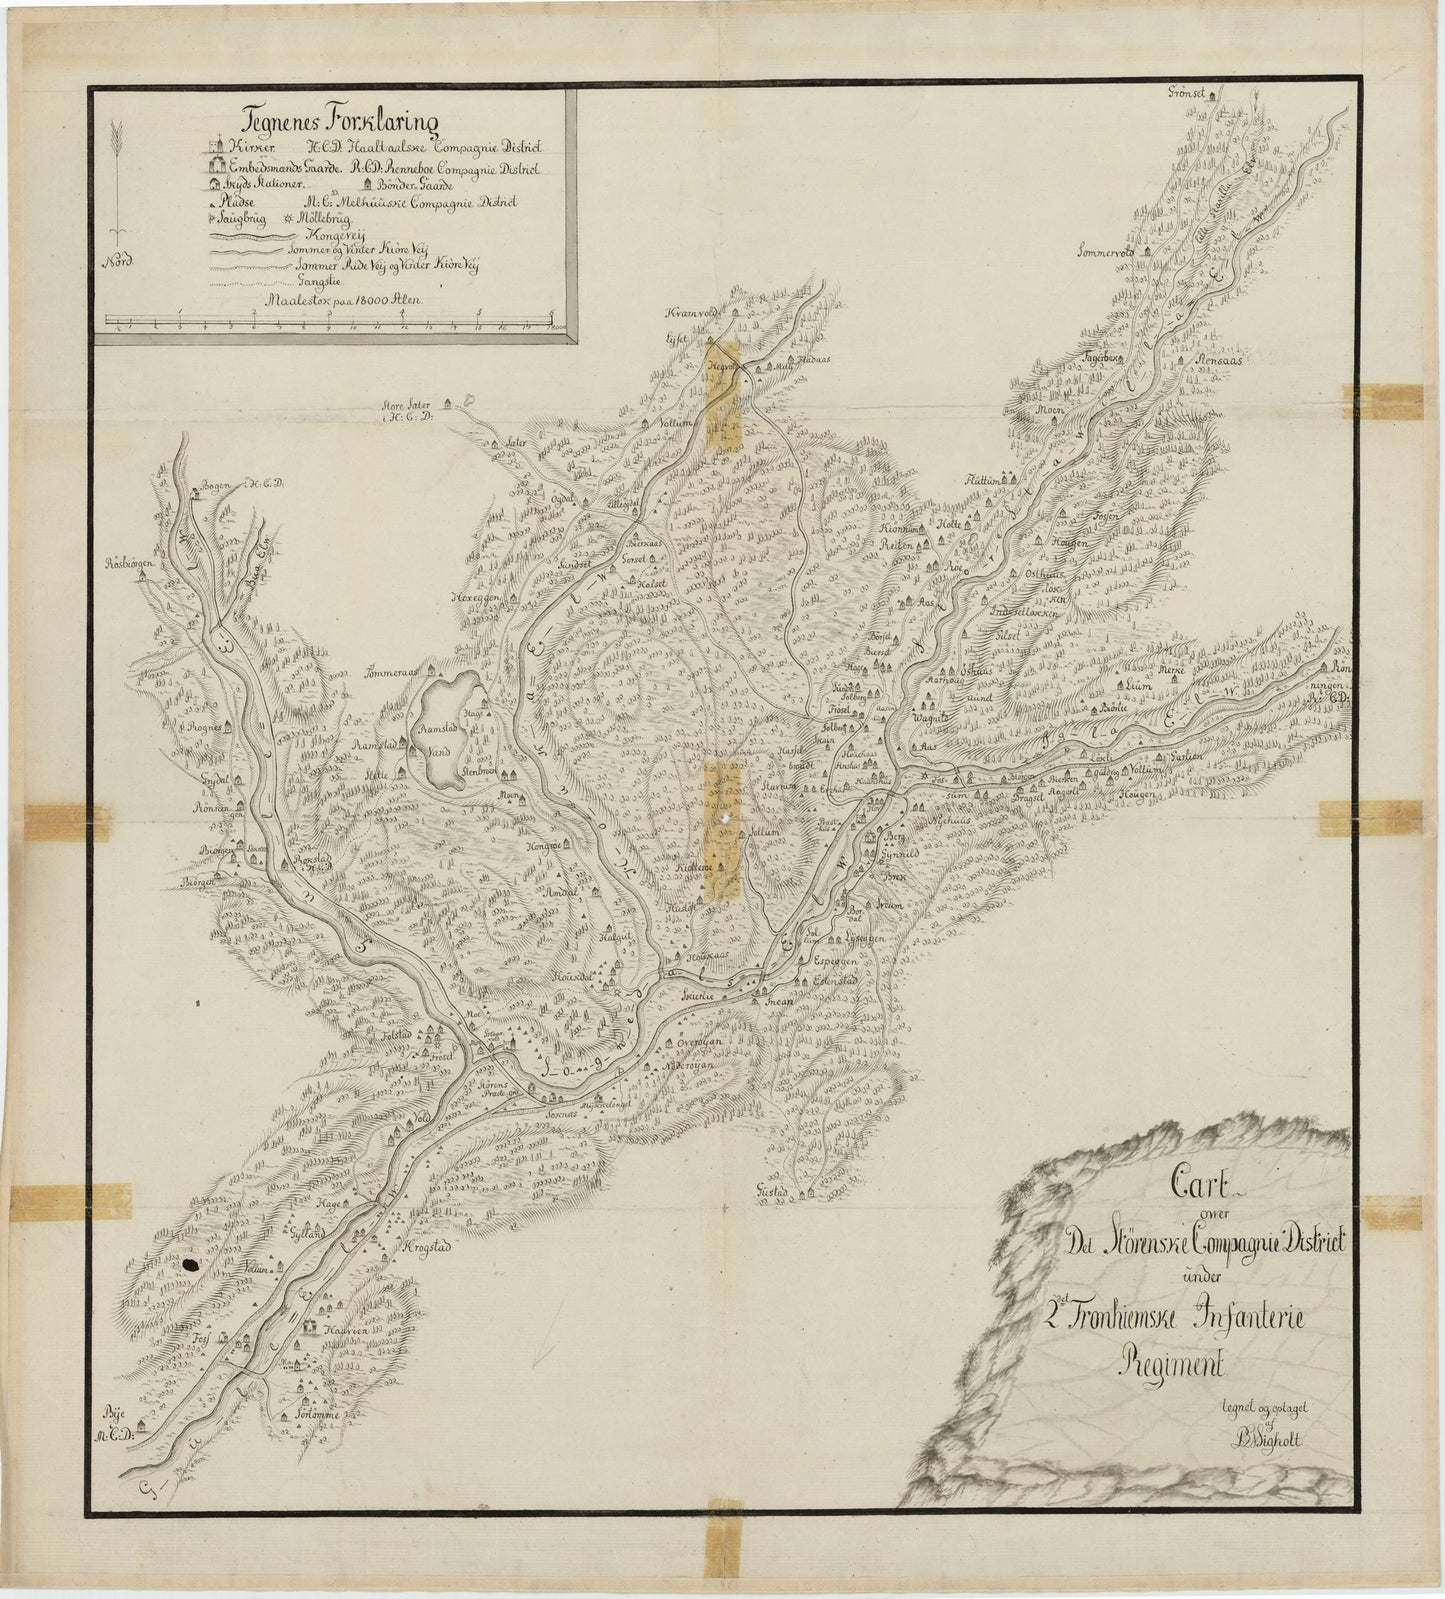 Kartblad 105: Carte over det Størenske Compagnie District: Sør-Trøndelag